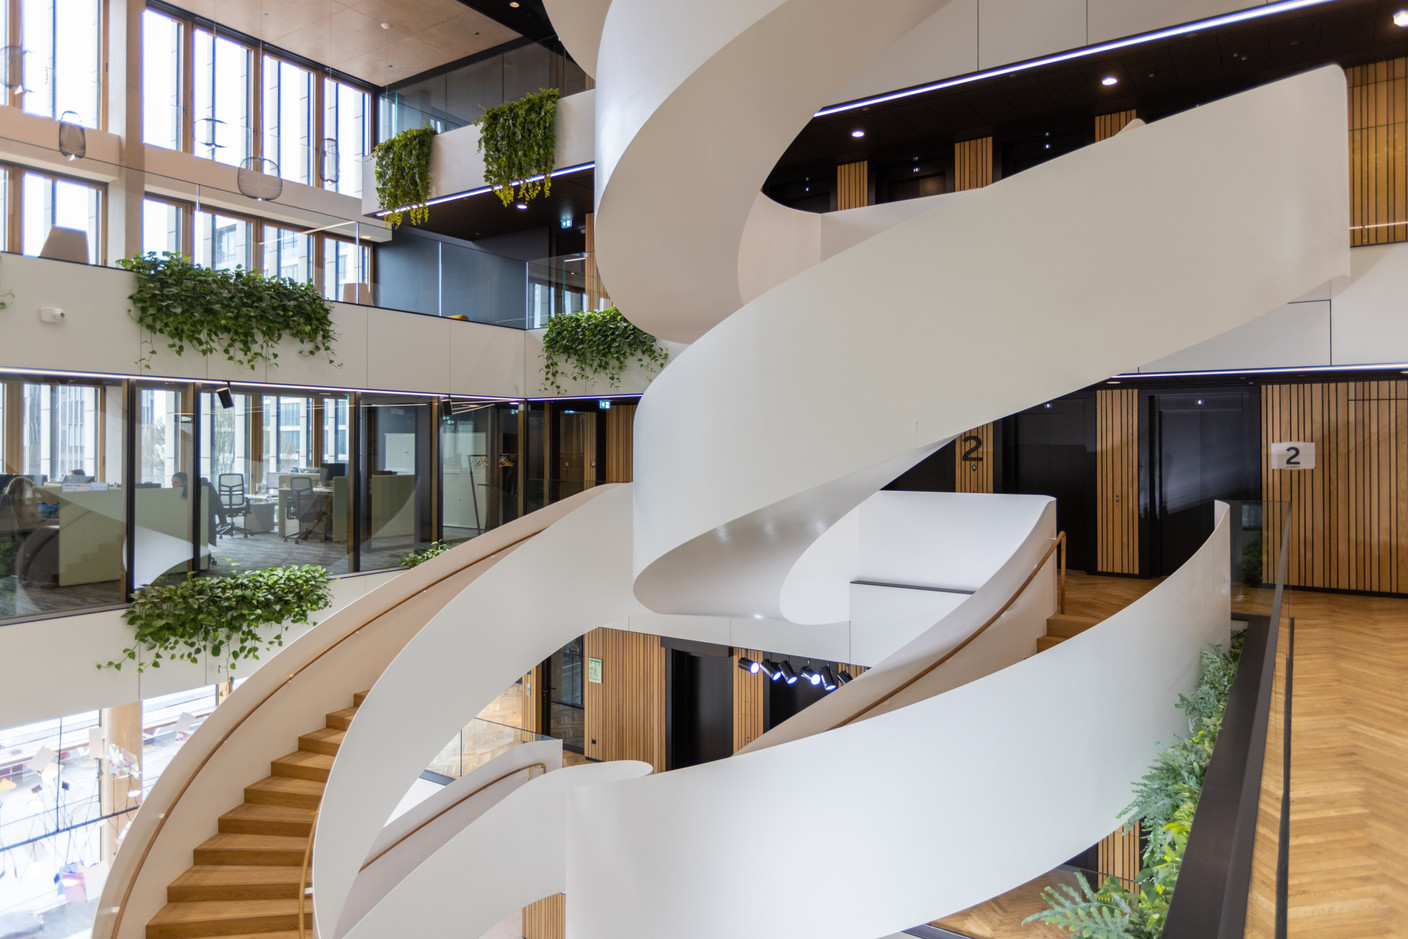 L’axe de circulation verticale occupe une place centrale dans l’atrium. (Photo: Romain Gamba/Maison Moderne)